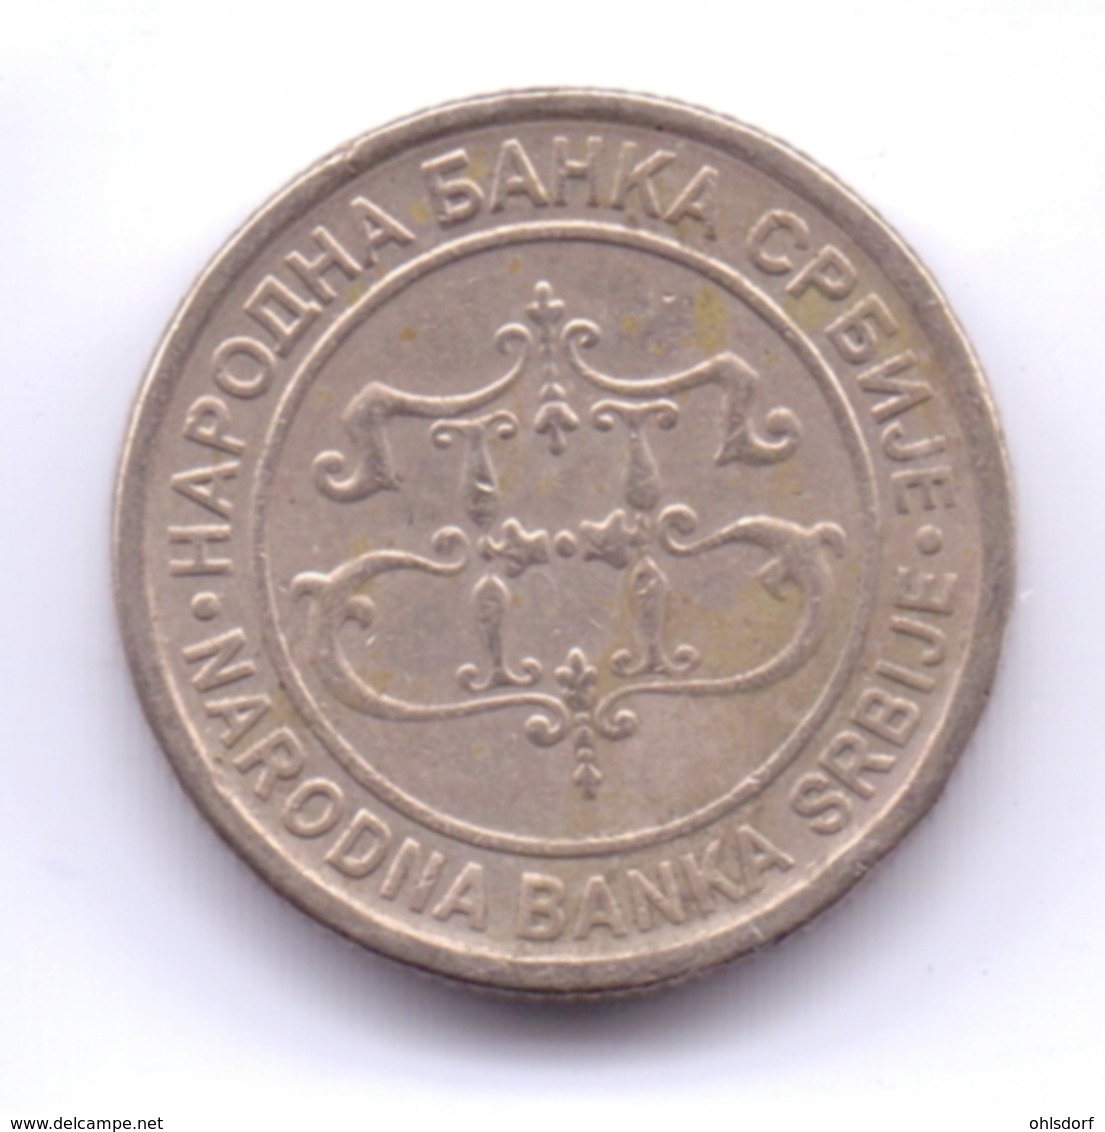 SERBIA 2003: 1 Dinar, KM 34 - Serbia